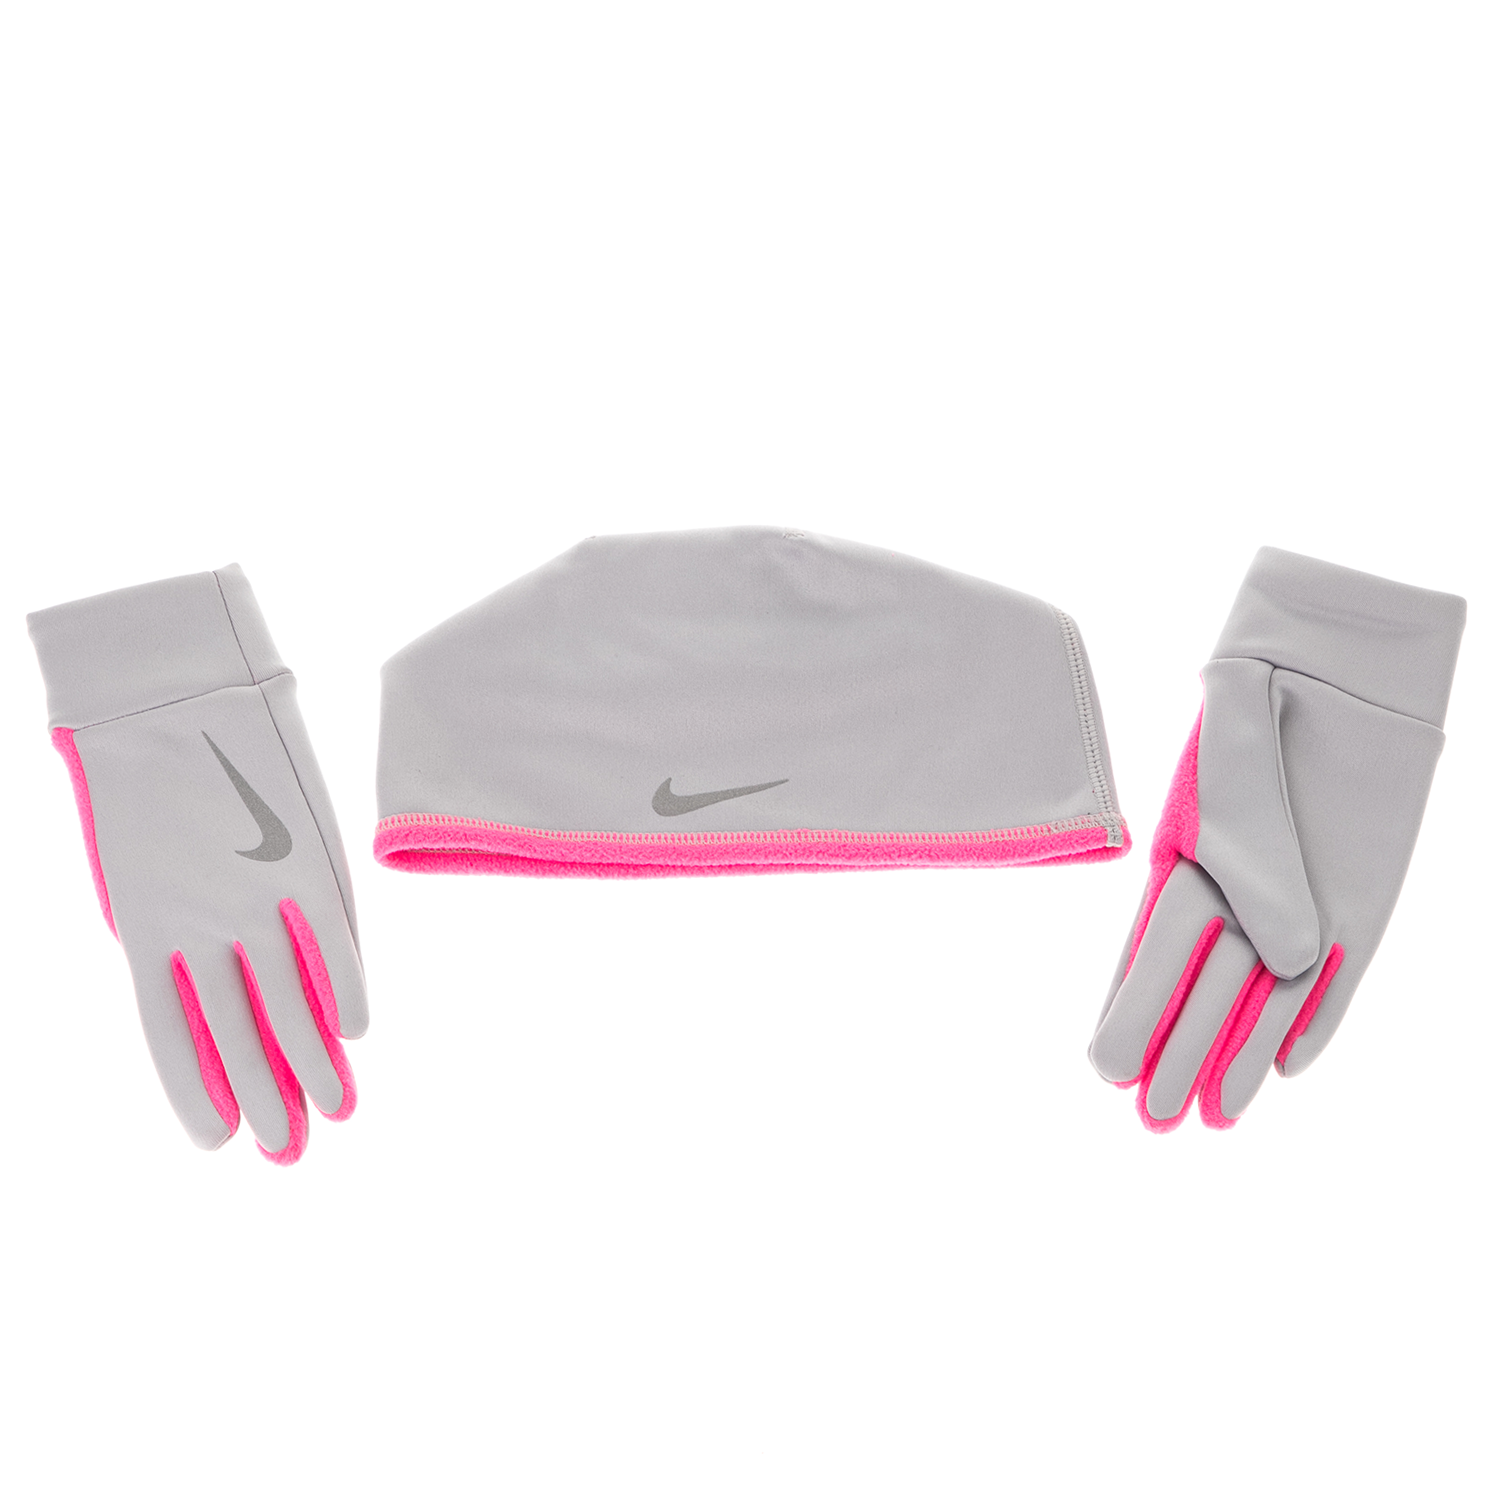 Γυναικεία/Αξεσουάρ/Καπέλα/Σκούφοι NIKE ACCESSORIES - Γυναικείο σετ σκούφος και γάντια RC.32.2S RUN THERMAL γκρι ροζ